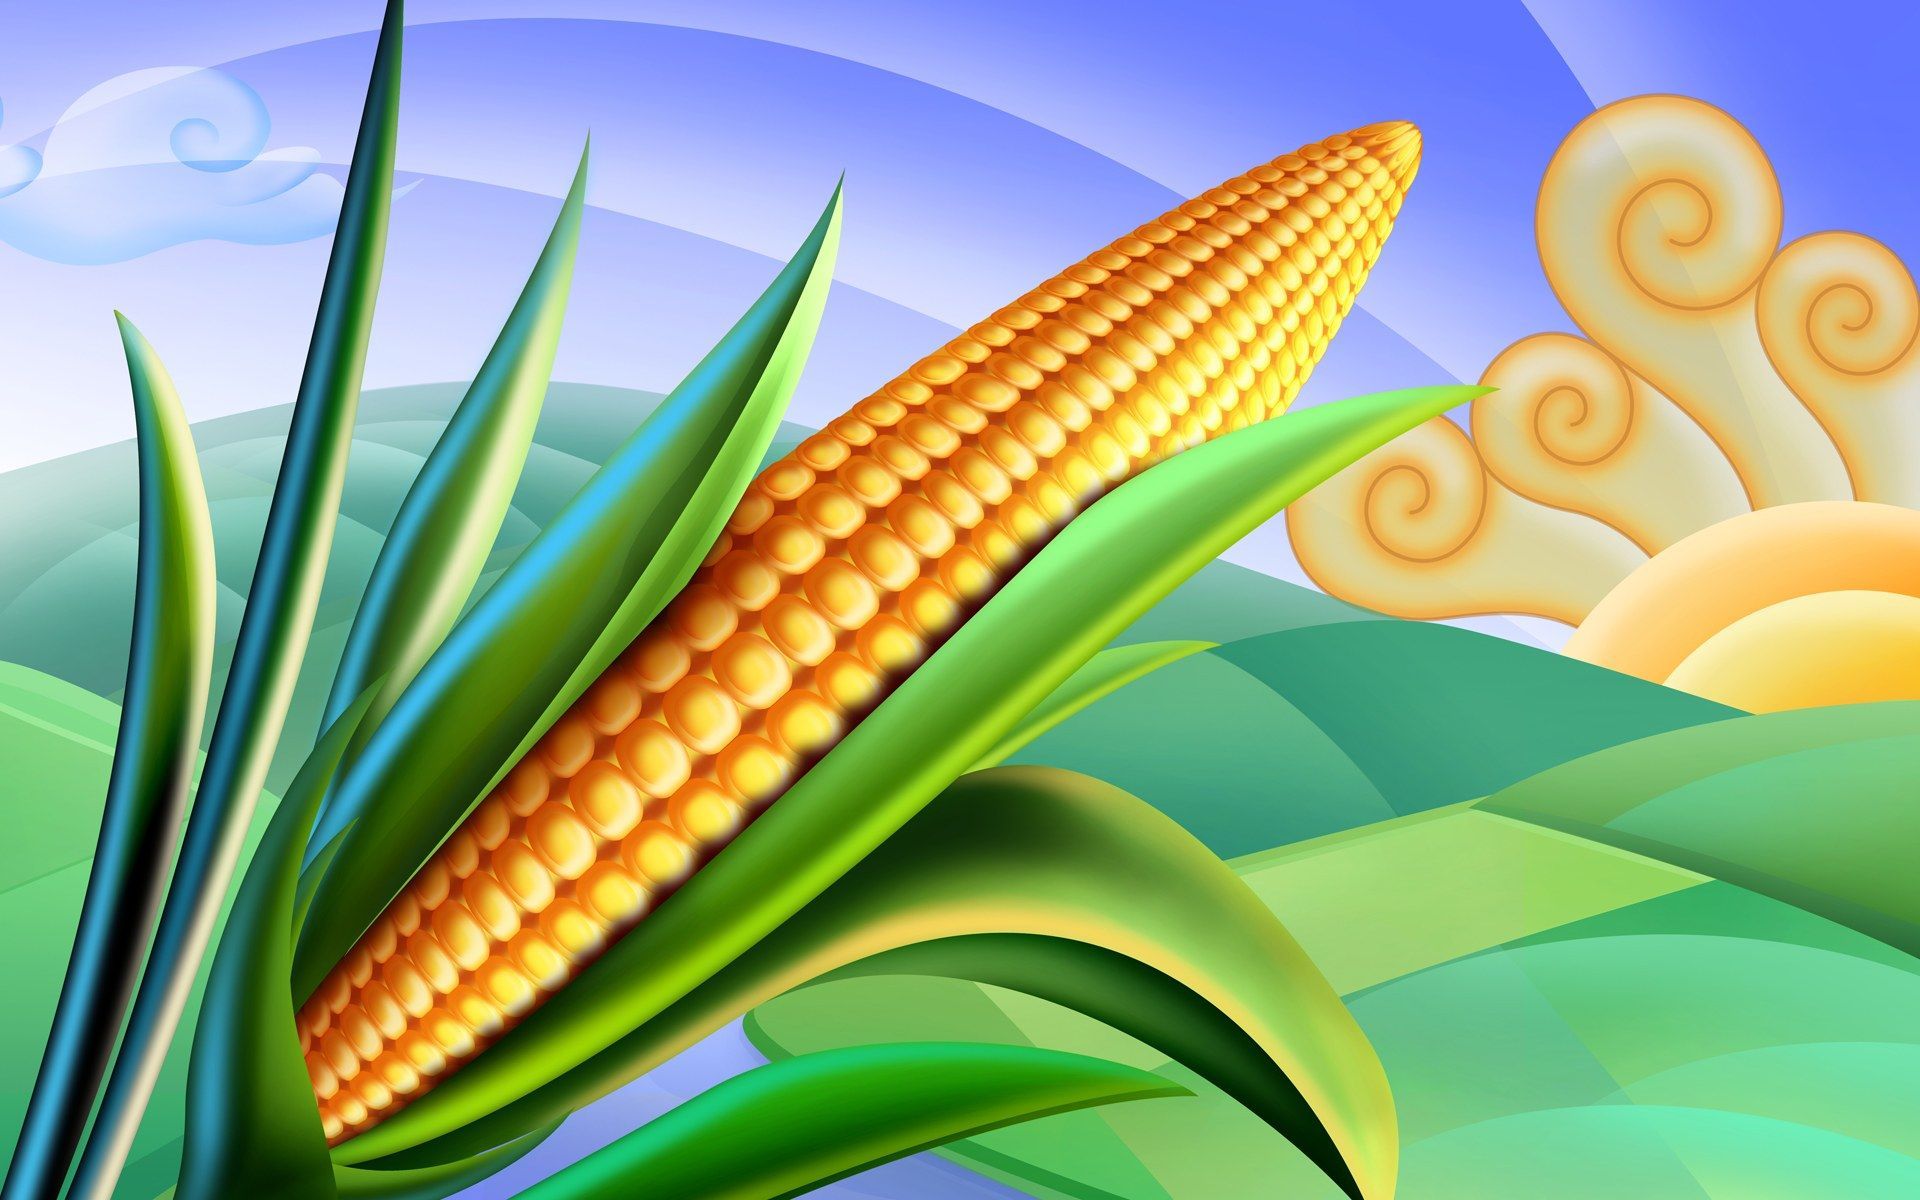 PSD Food illustrations 3193 corn clipart corn picture Wallpaper Wallpaper 74418. Food illustrations, Corn festival, Clip art